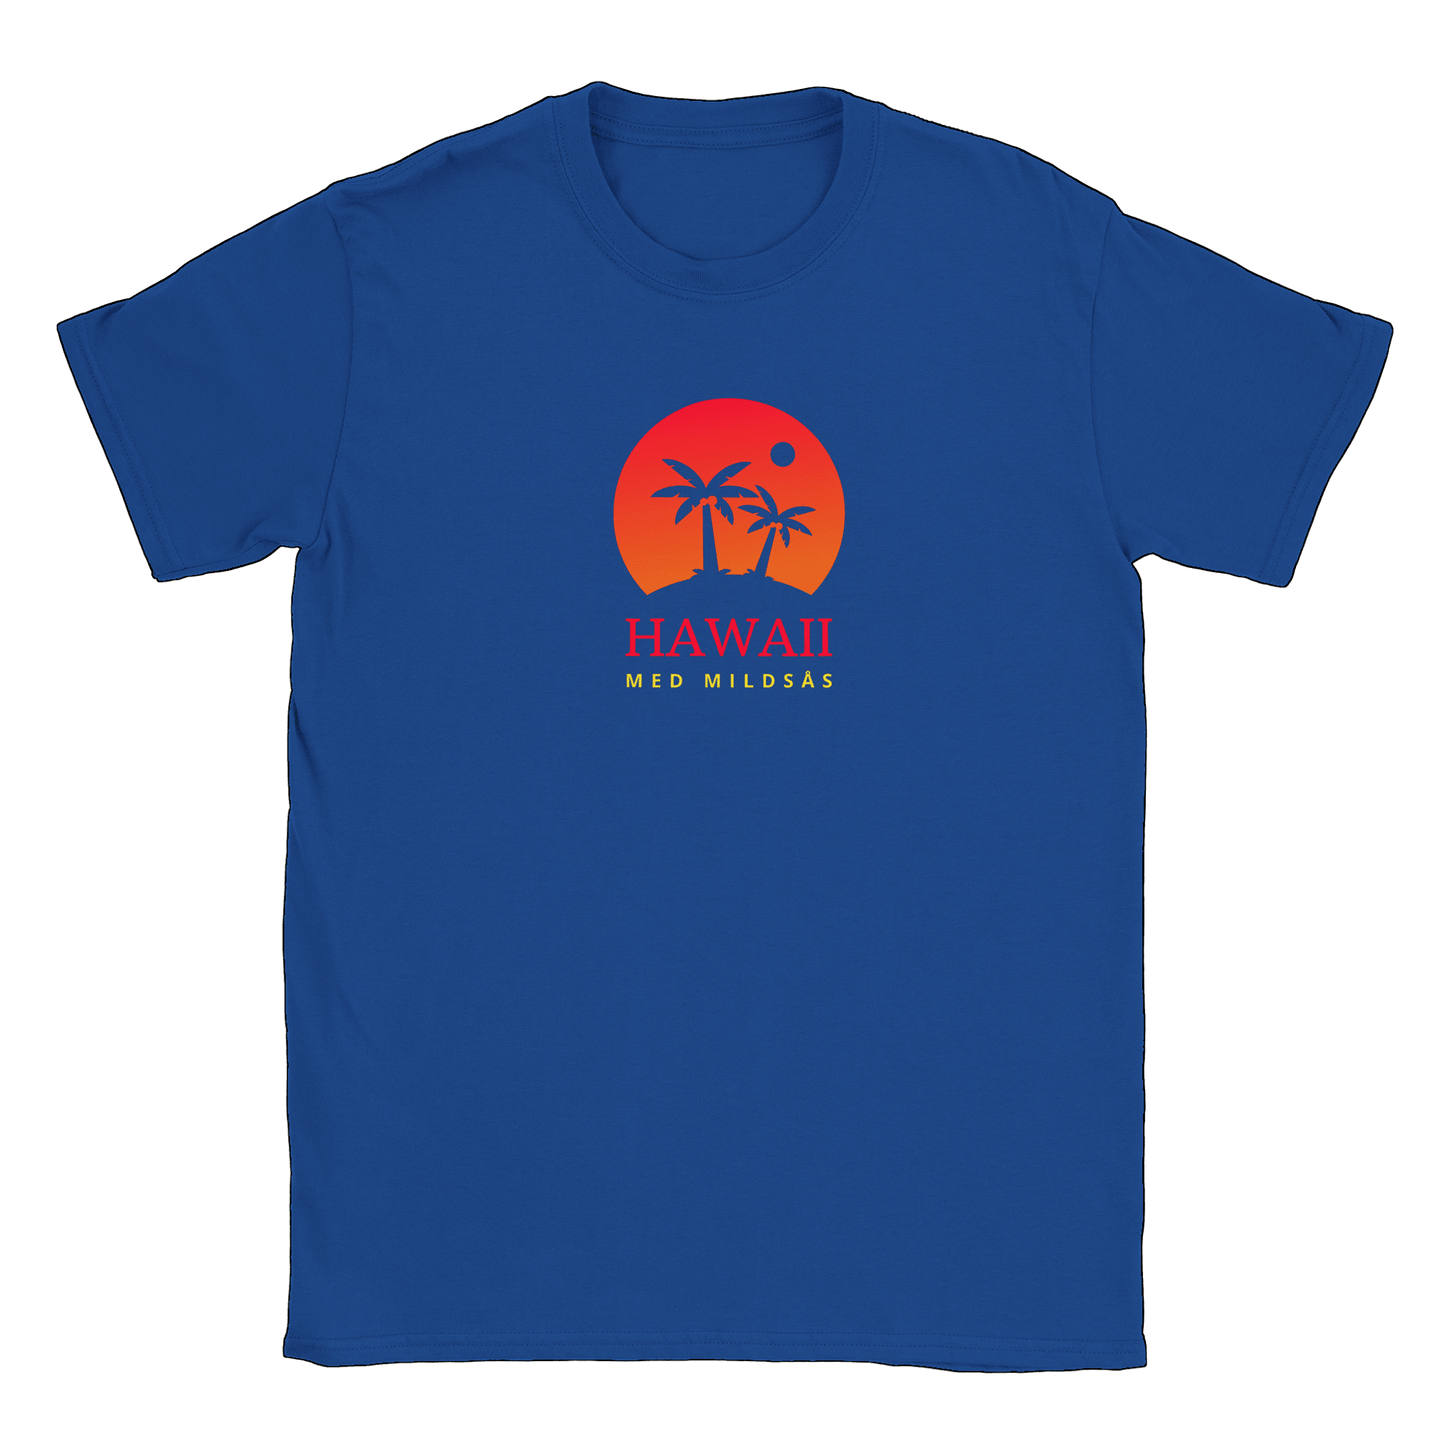 Hawaii med mildsås - T-shirt Royal